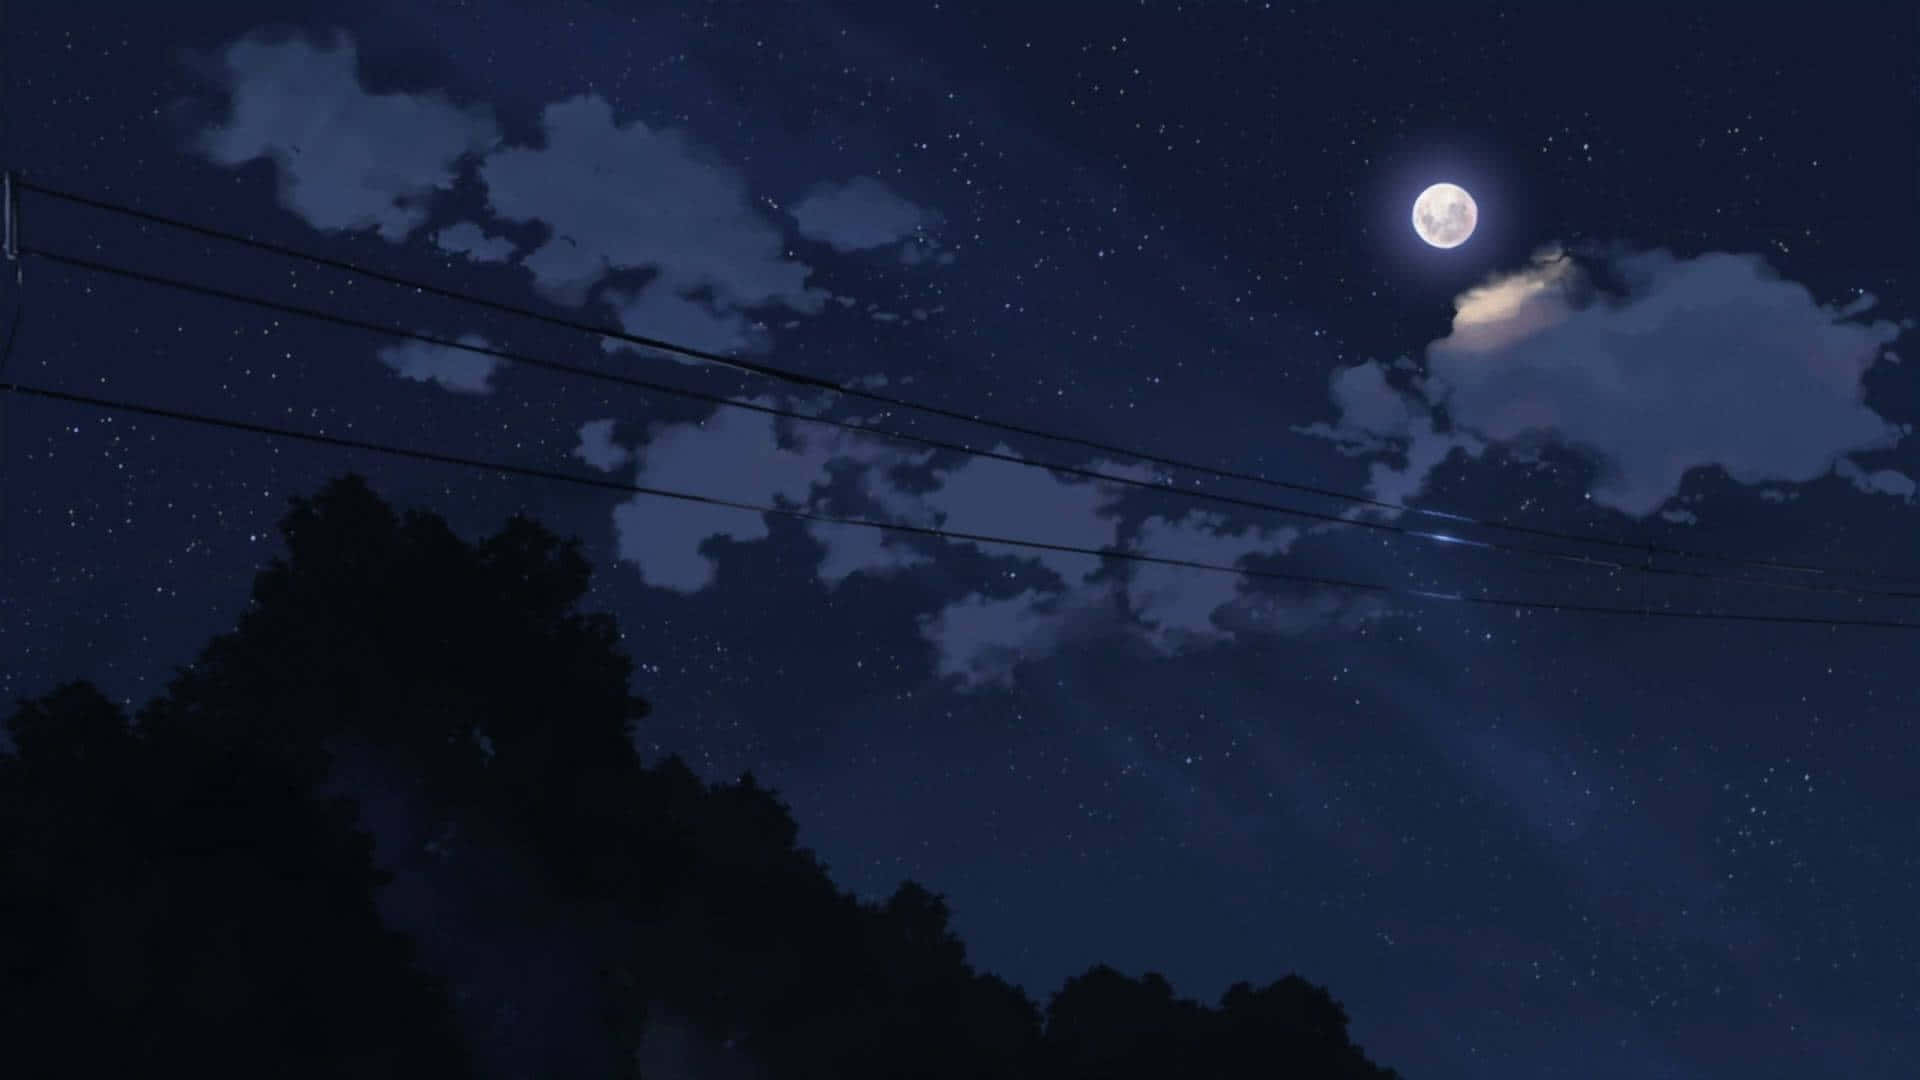 Misteriosaescena De Anime Oscuro. Fondo de pantalla